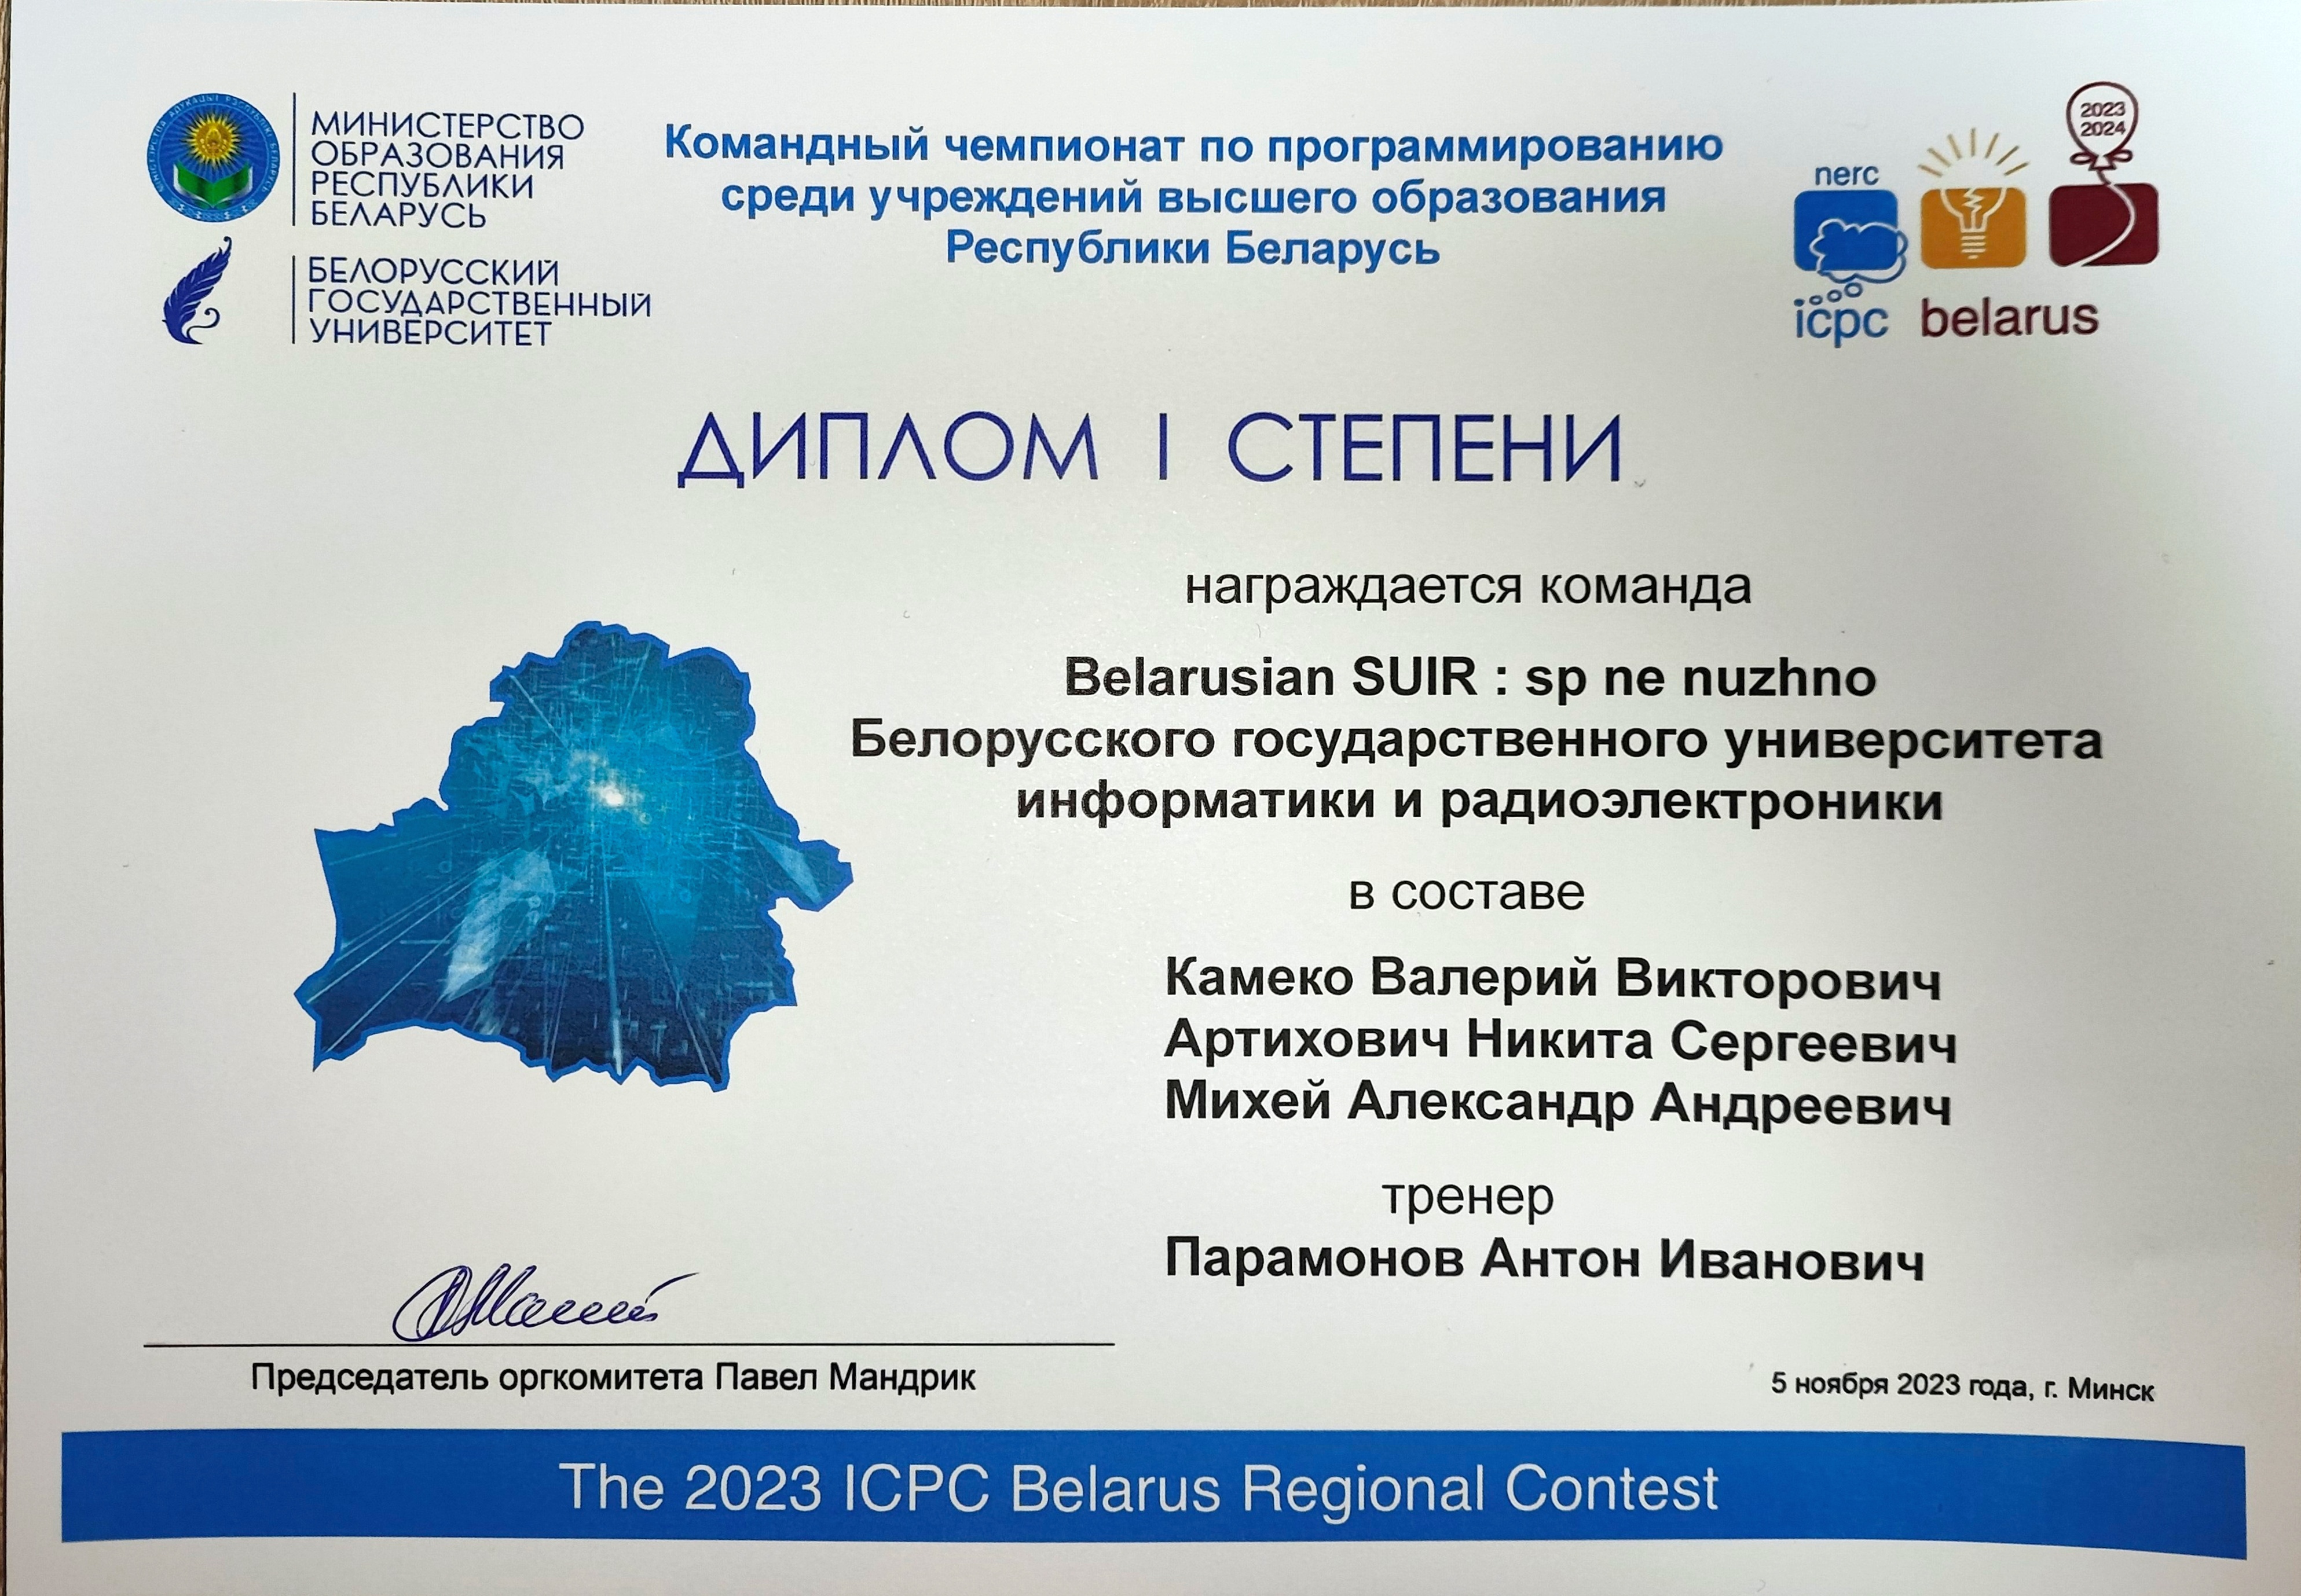 ICPC Belarus Regional Contest 2023